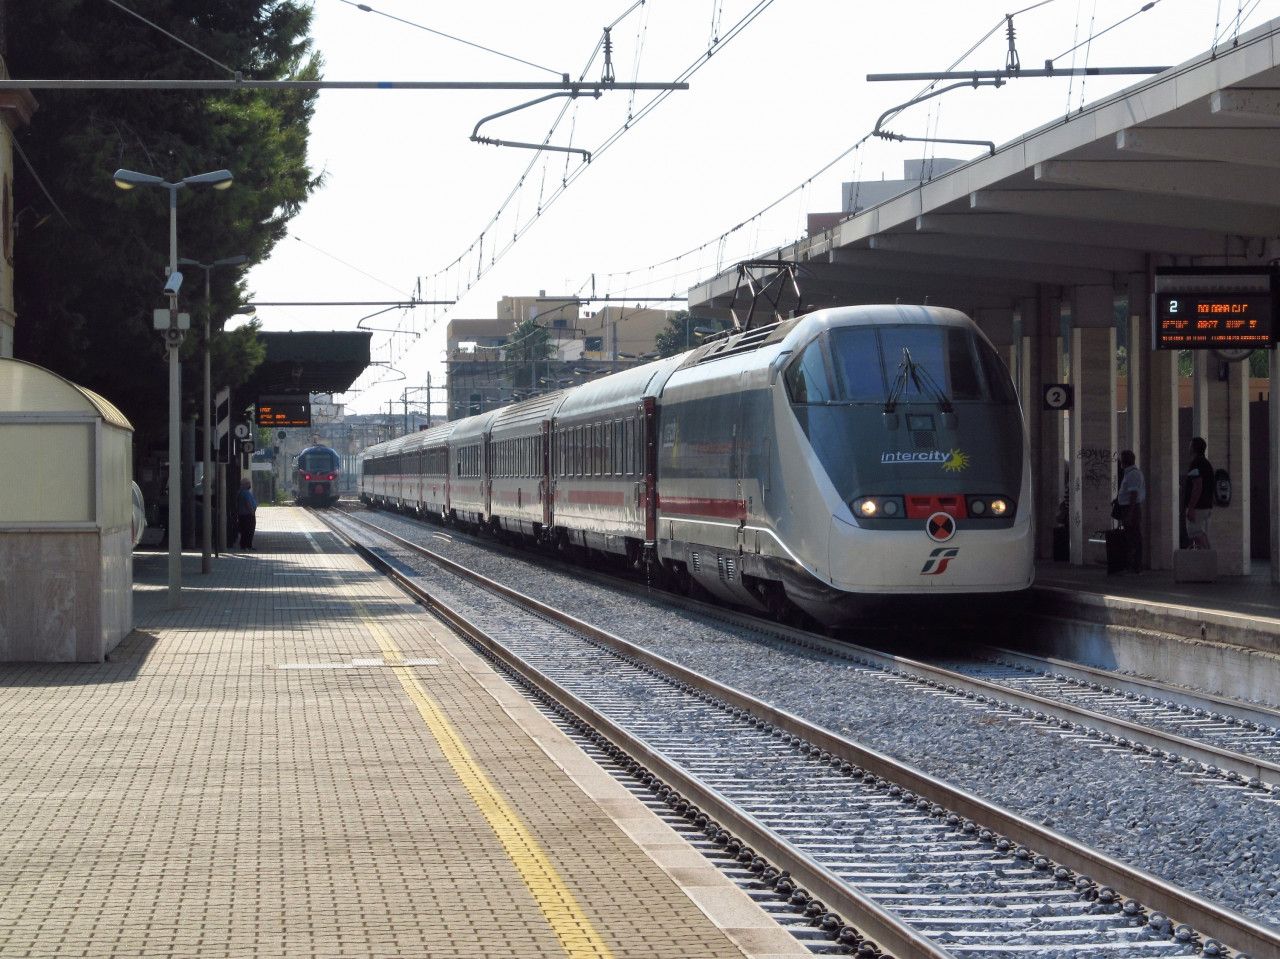 IC z Lecce do Boloni (v pozad regio. vlak do Lecce) v zast. Monopoli